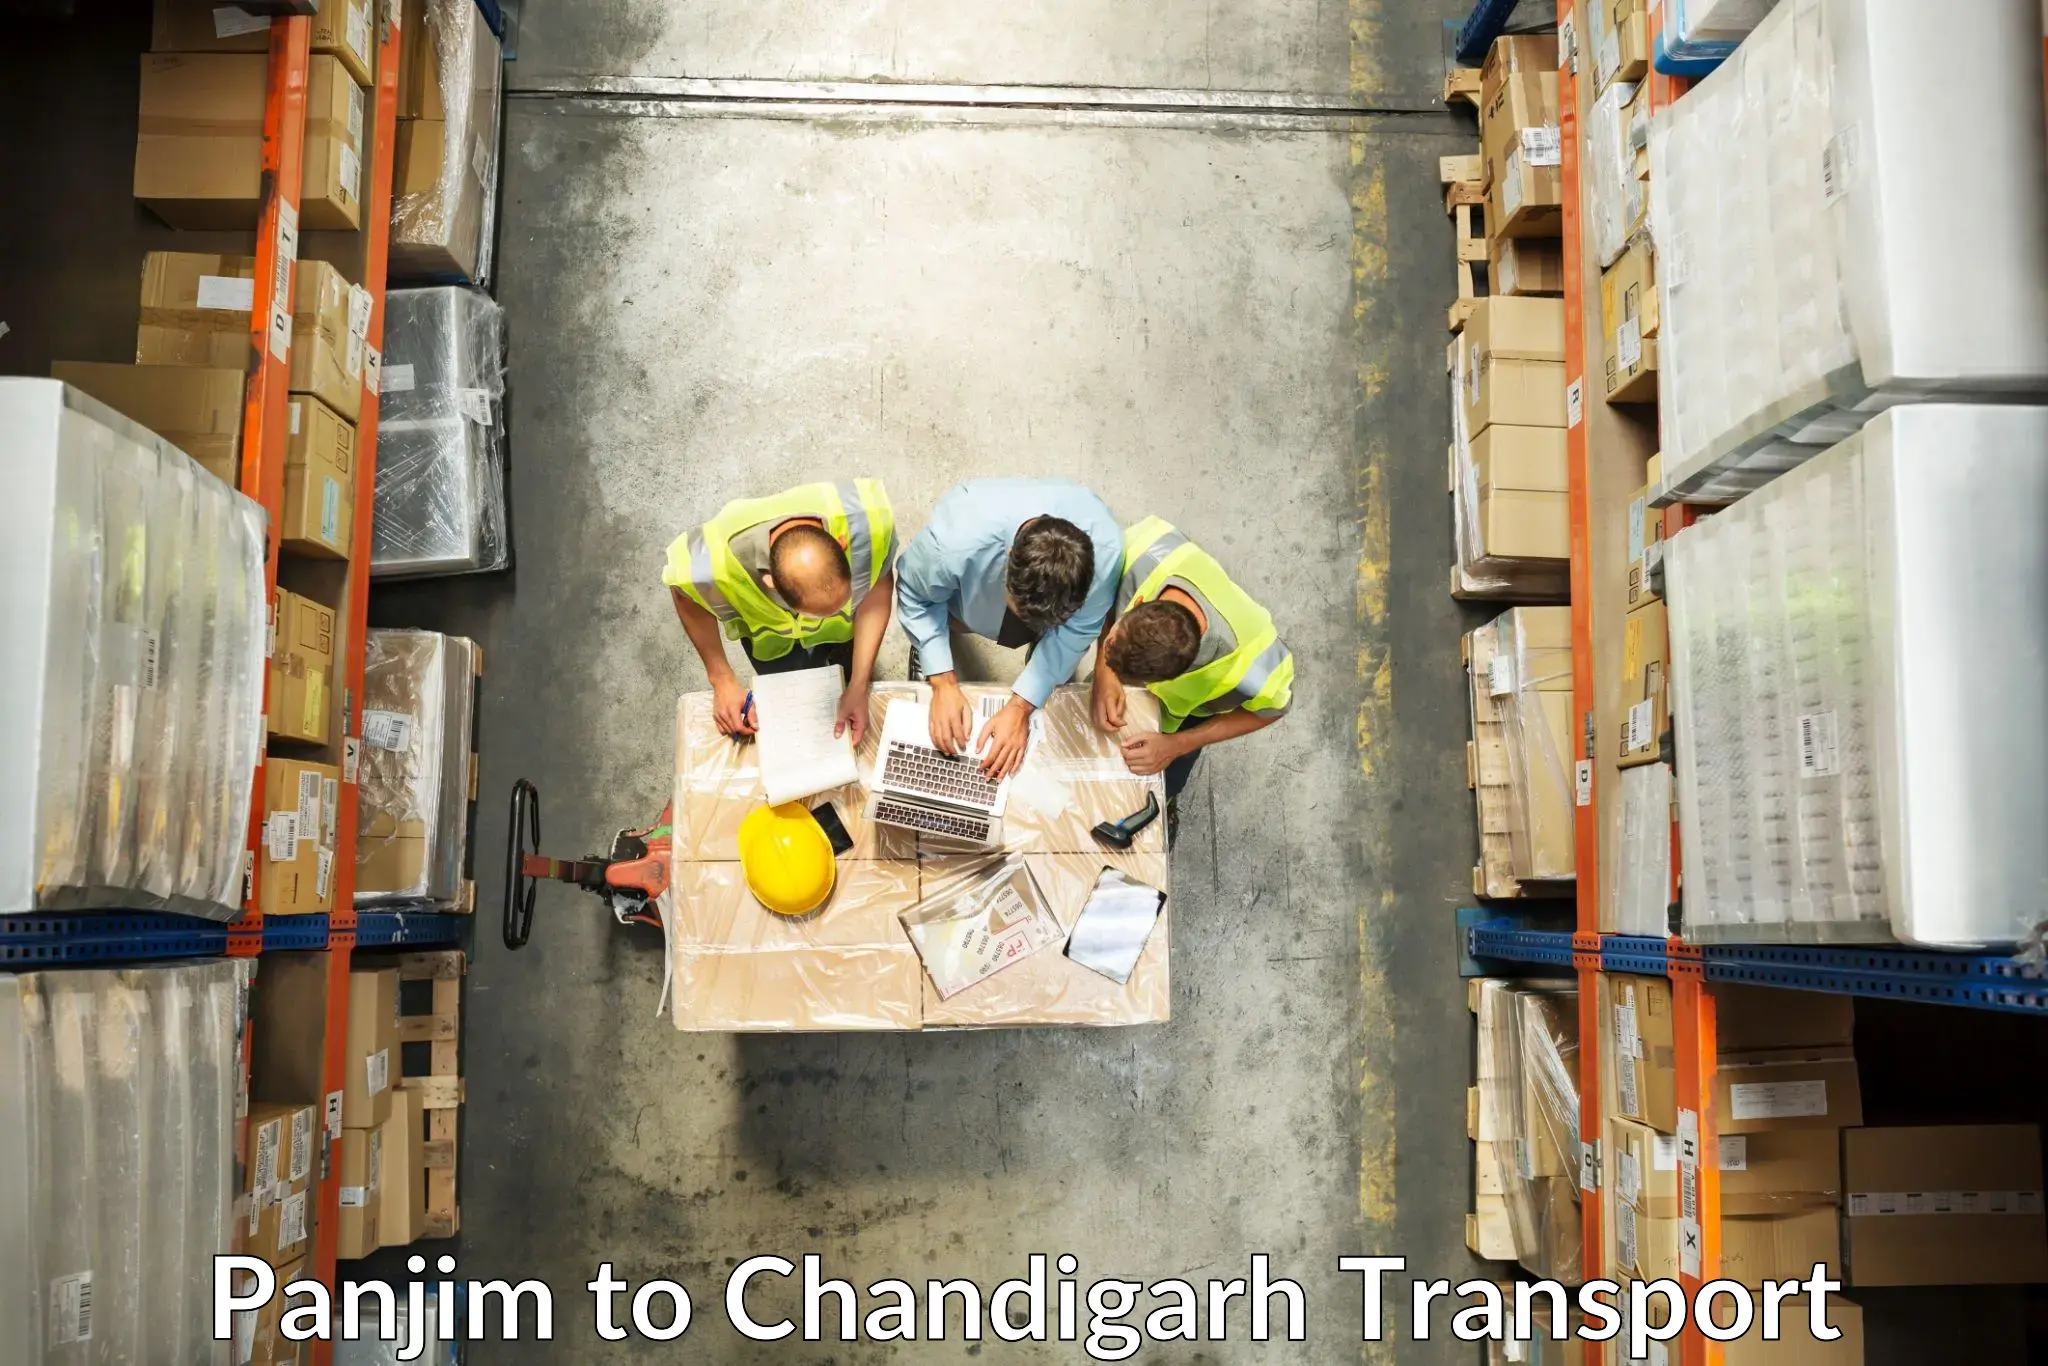 Shipping partner Panjim to Chandigarh